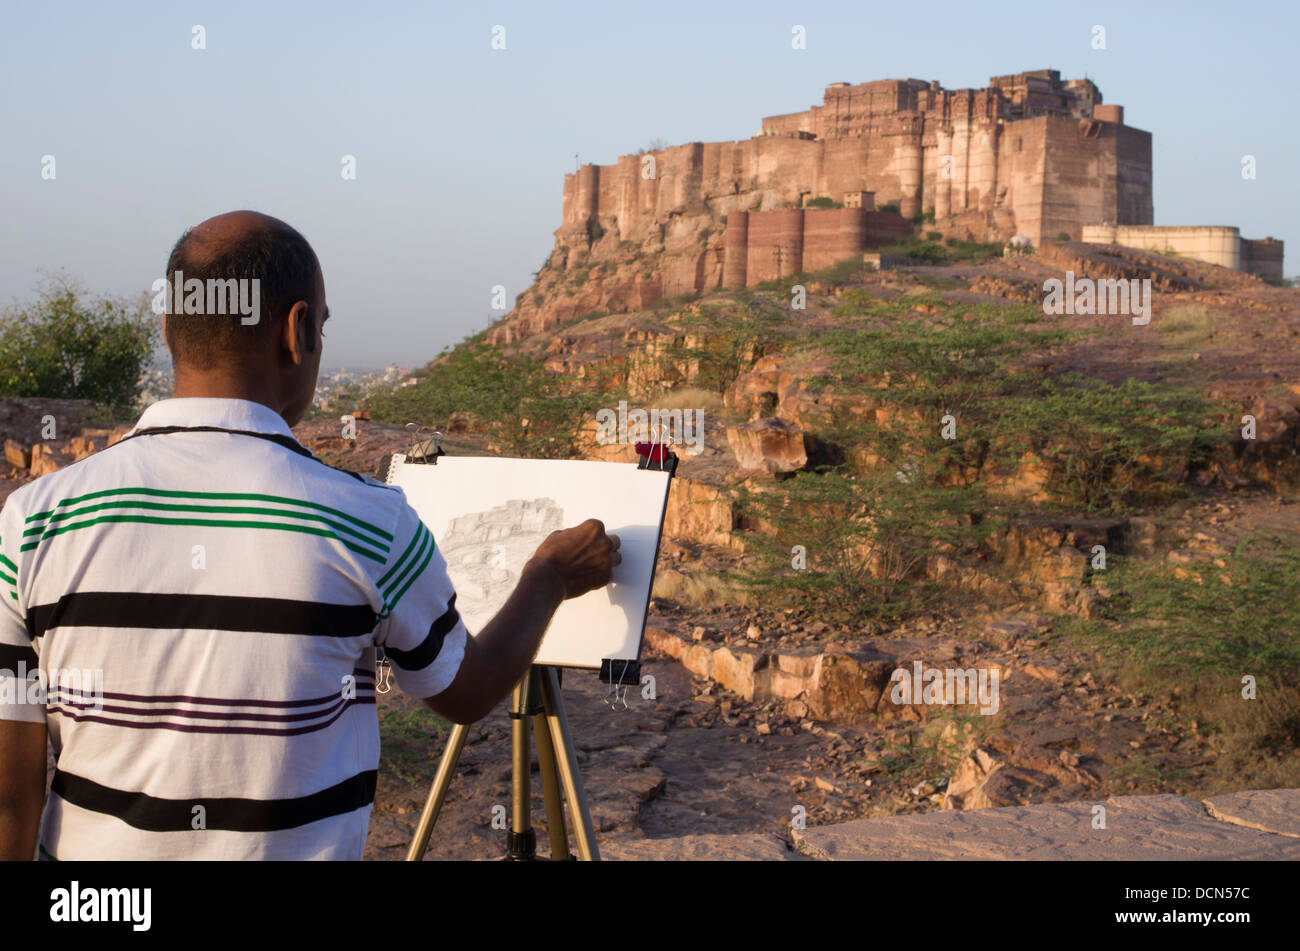 Indian man sketching Meherangarh Fort - Jodhpur, Rajashtan, India Stock Photo